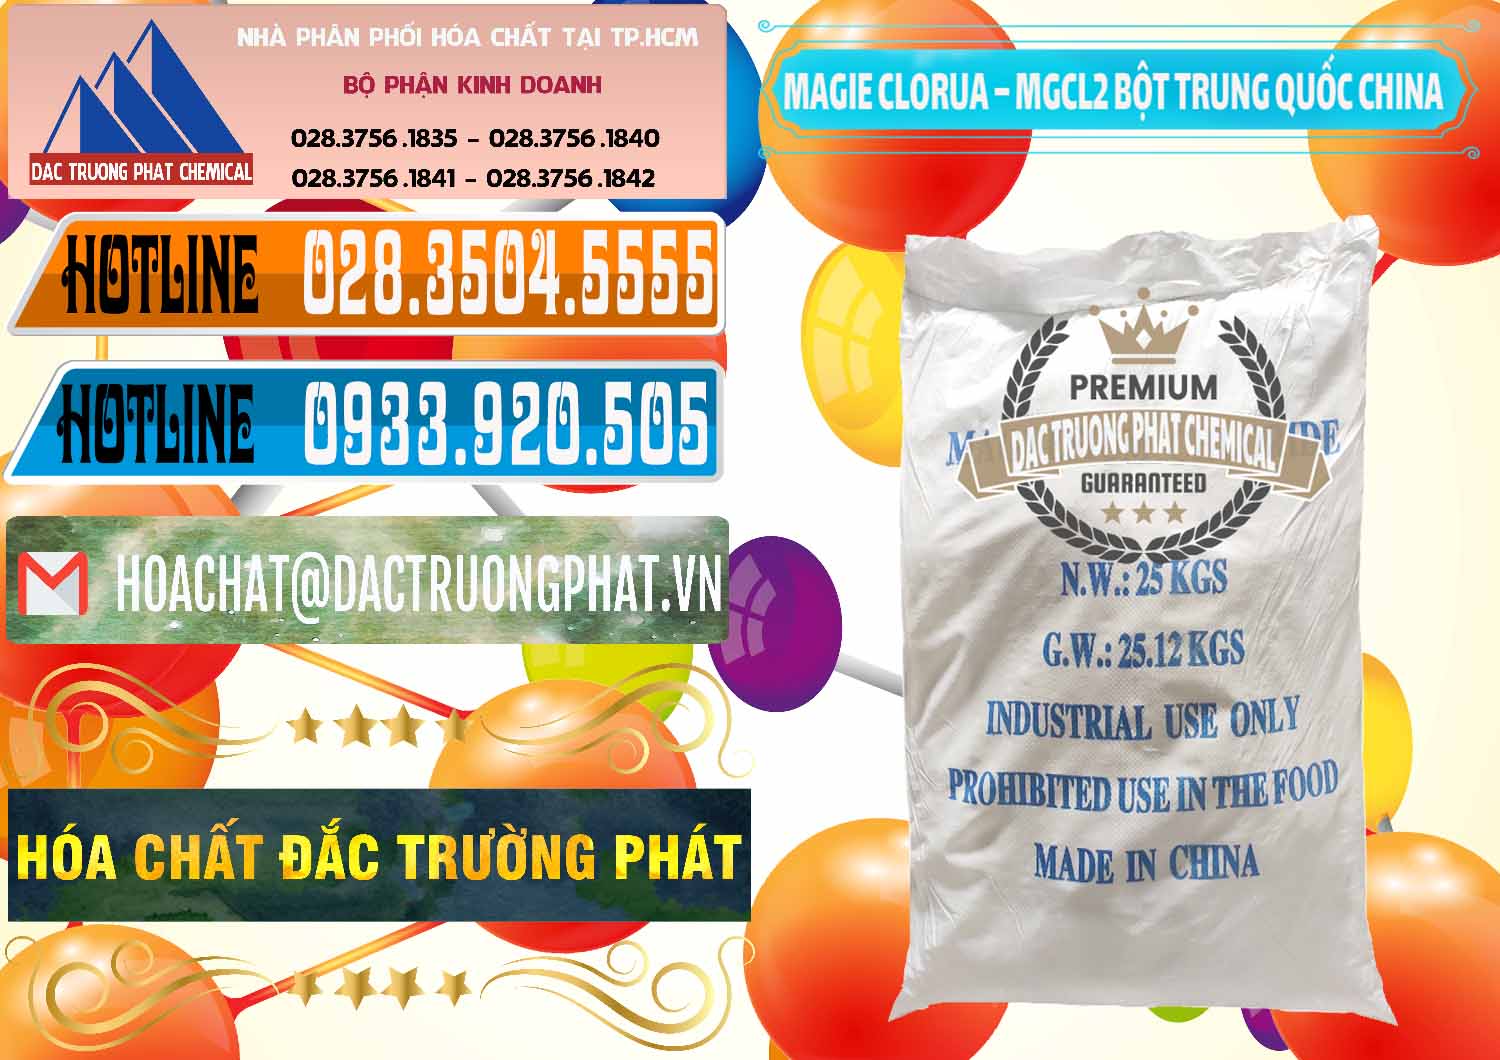 Công ty chuyên nhập khẩu & bán Magie Clorua – MGCL2 96% Dạng Bột Bao Chữ Xanh Trung Quốc China - 0207 - Nơi chuyên bán & cung cấp hóa chất tại TP.HCM - stmp.net